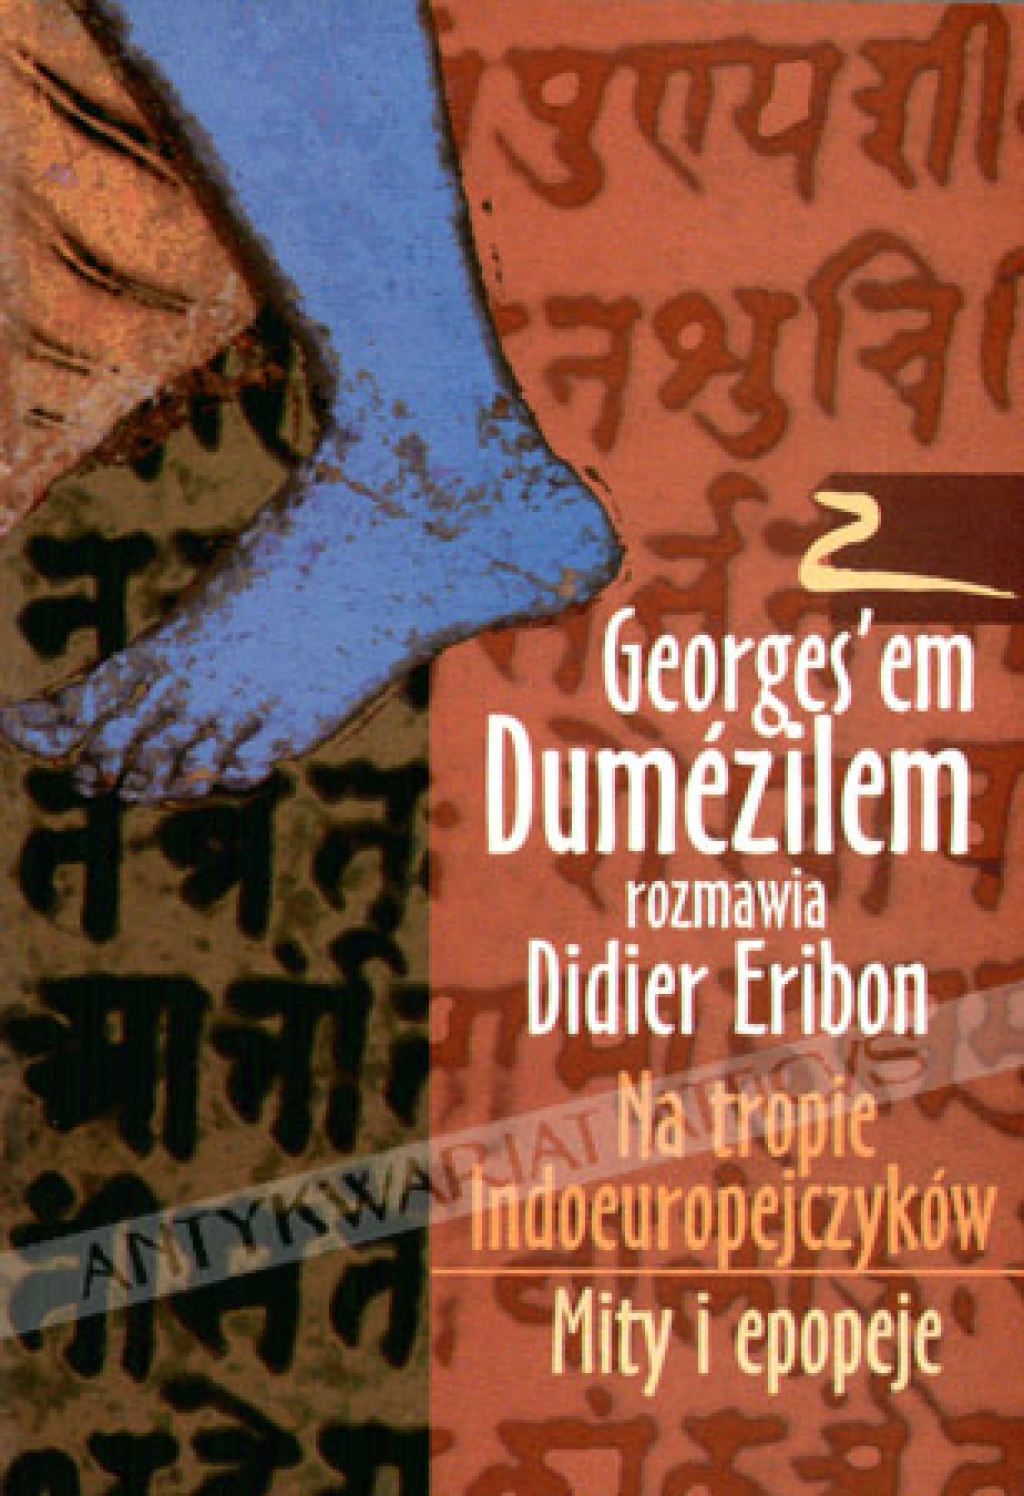 Z Georges'em Dumezilem rozmawia Didier Eribon. Na tropie Indoeuropejczyków. Mity i epopeje